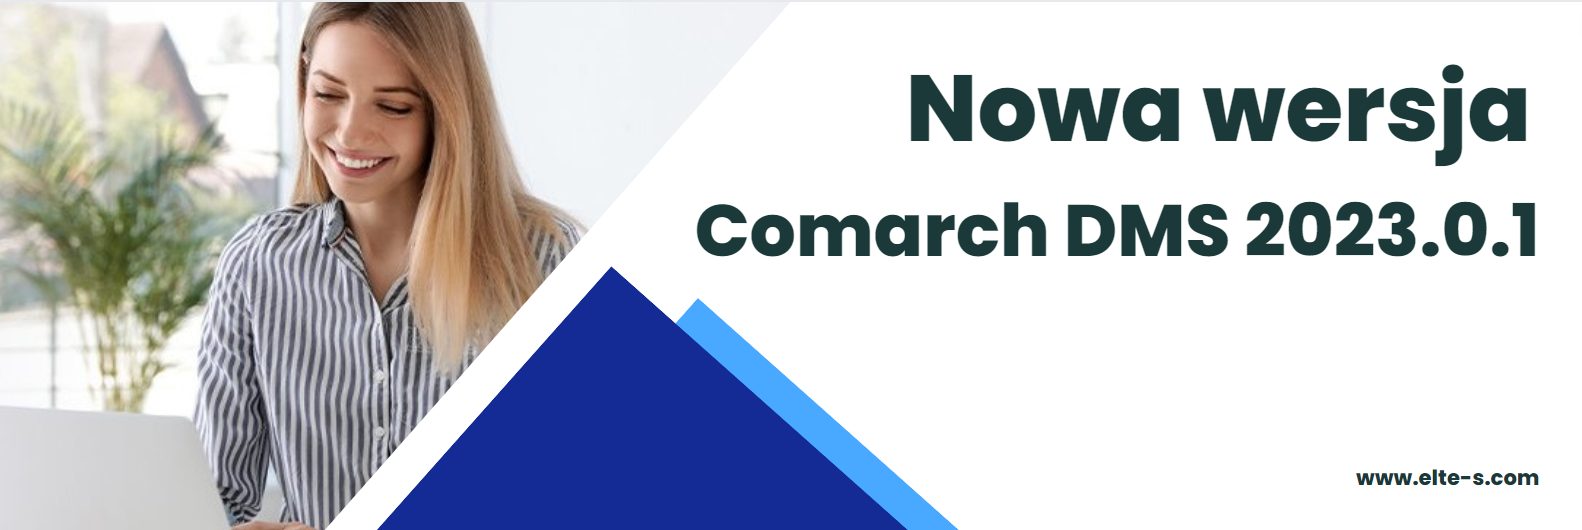 Nowa wersja Comarch DMS 2023.0.1